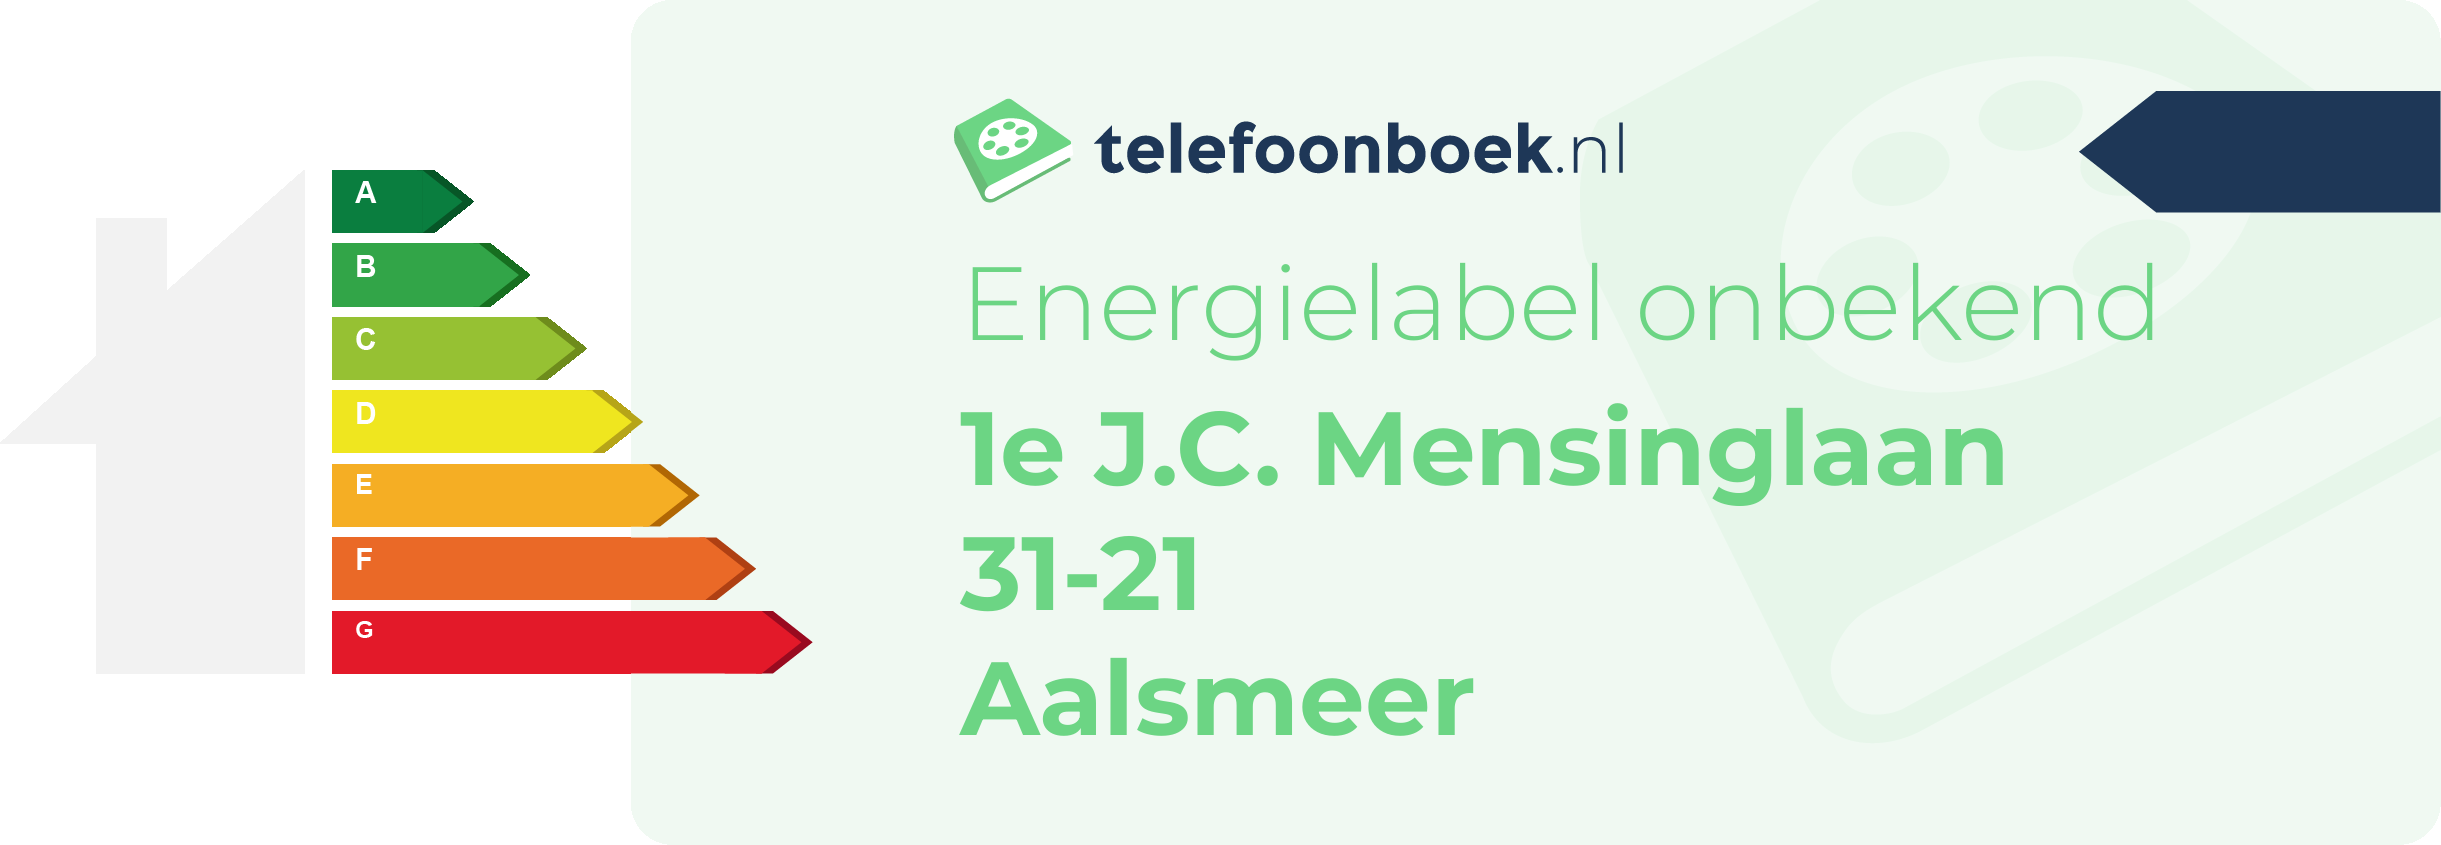 Energielabel 1e J.C. Mensinglaan 31-21 Aalsmeer